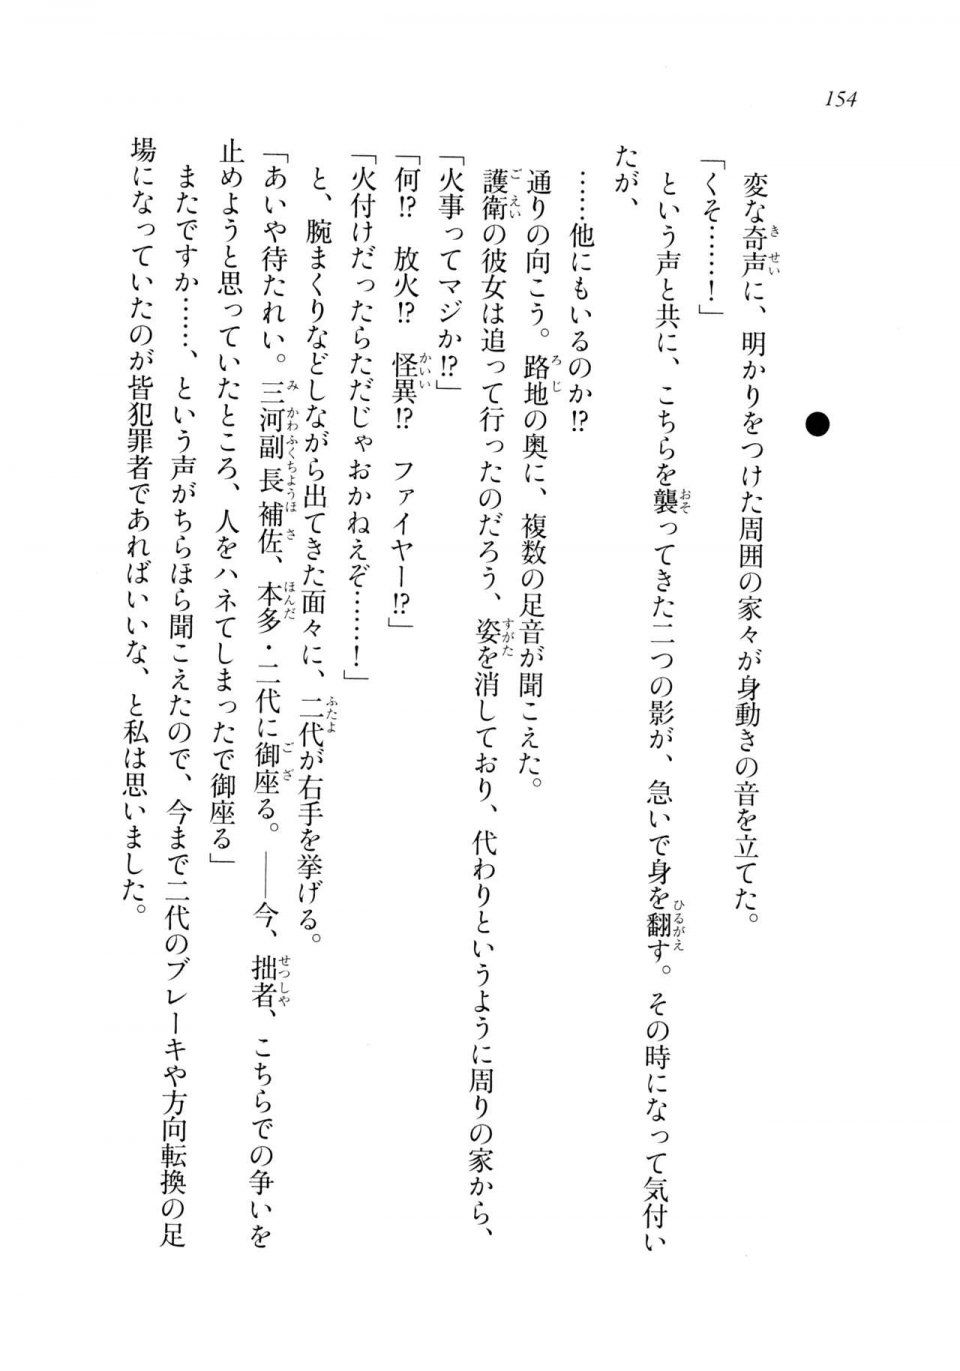 Kyoukai Senjou no Horizon LN Sidestory Vol 2 - Photo #152